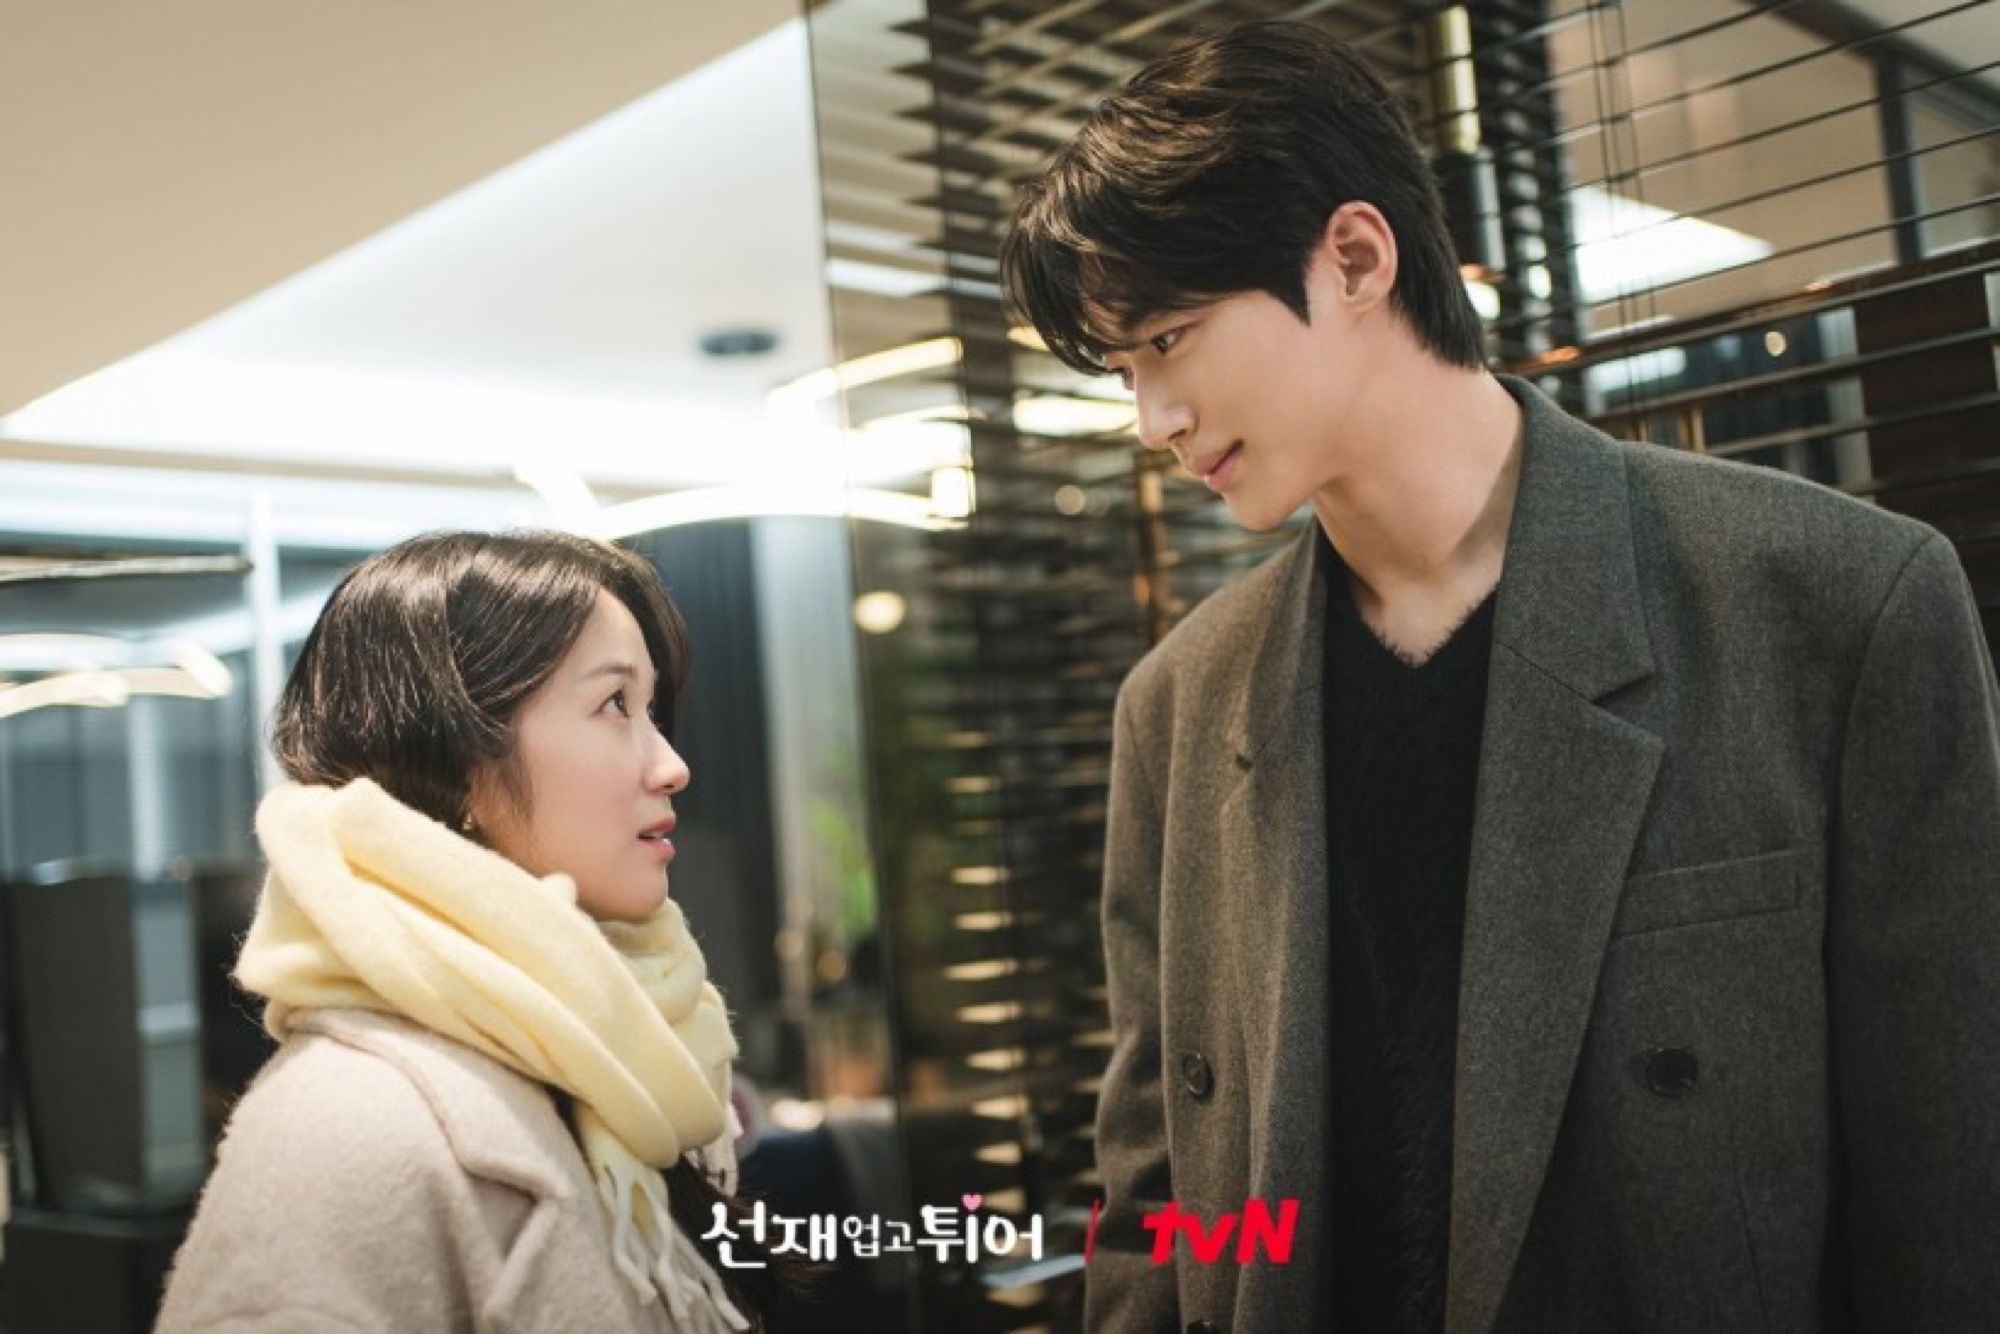 Sinopsis Lovely Runner episode 8, Byeon Woo Seok cium Kim Hye Yoon.